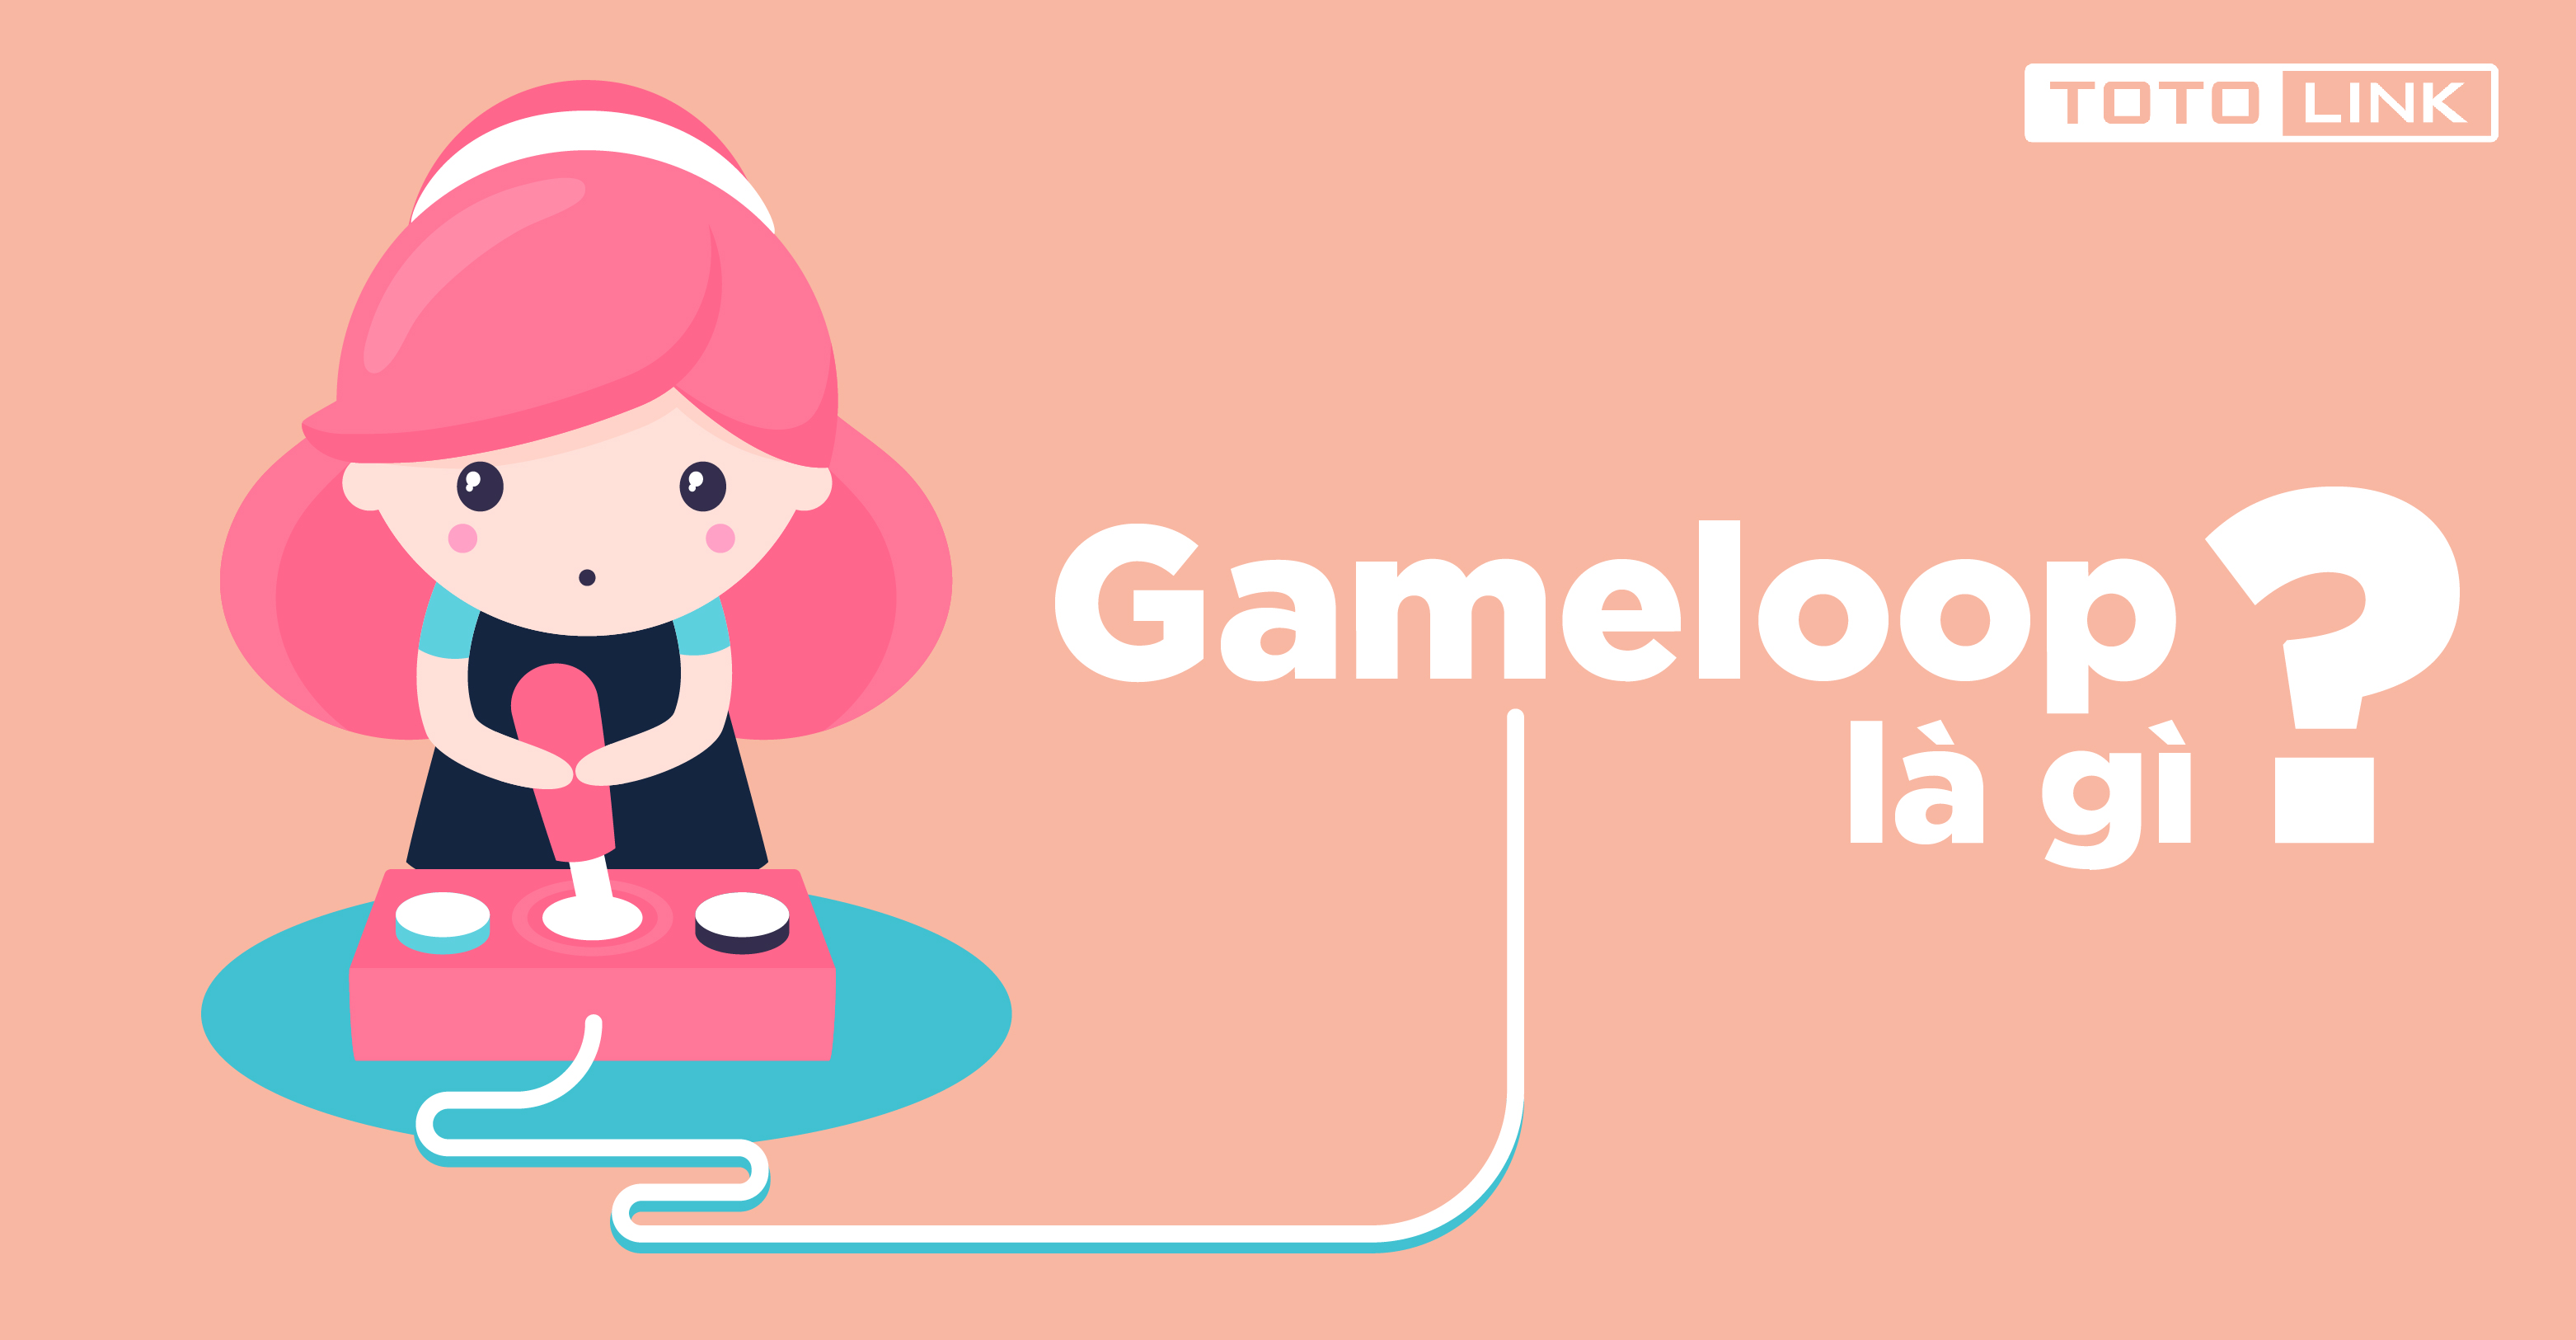 Game loop là gì? Hướng dẫn cài đặt và chơi game trên Game loop